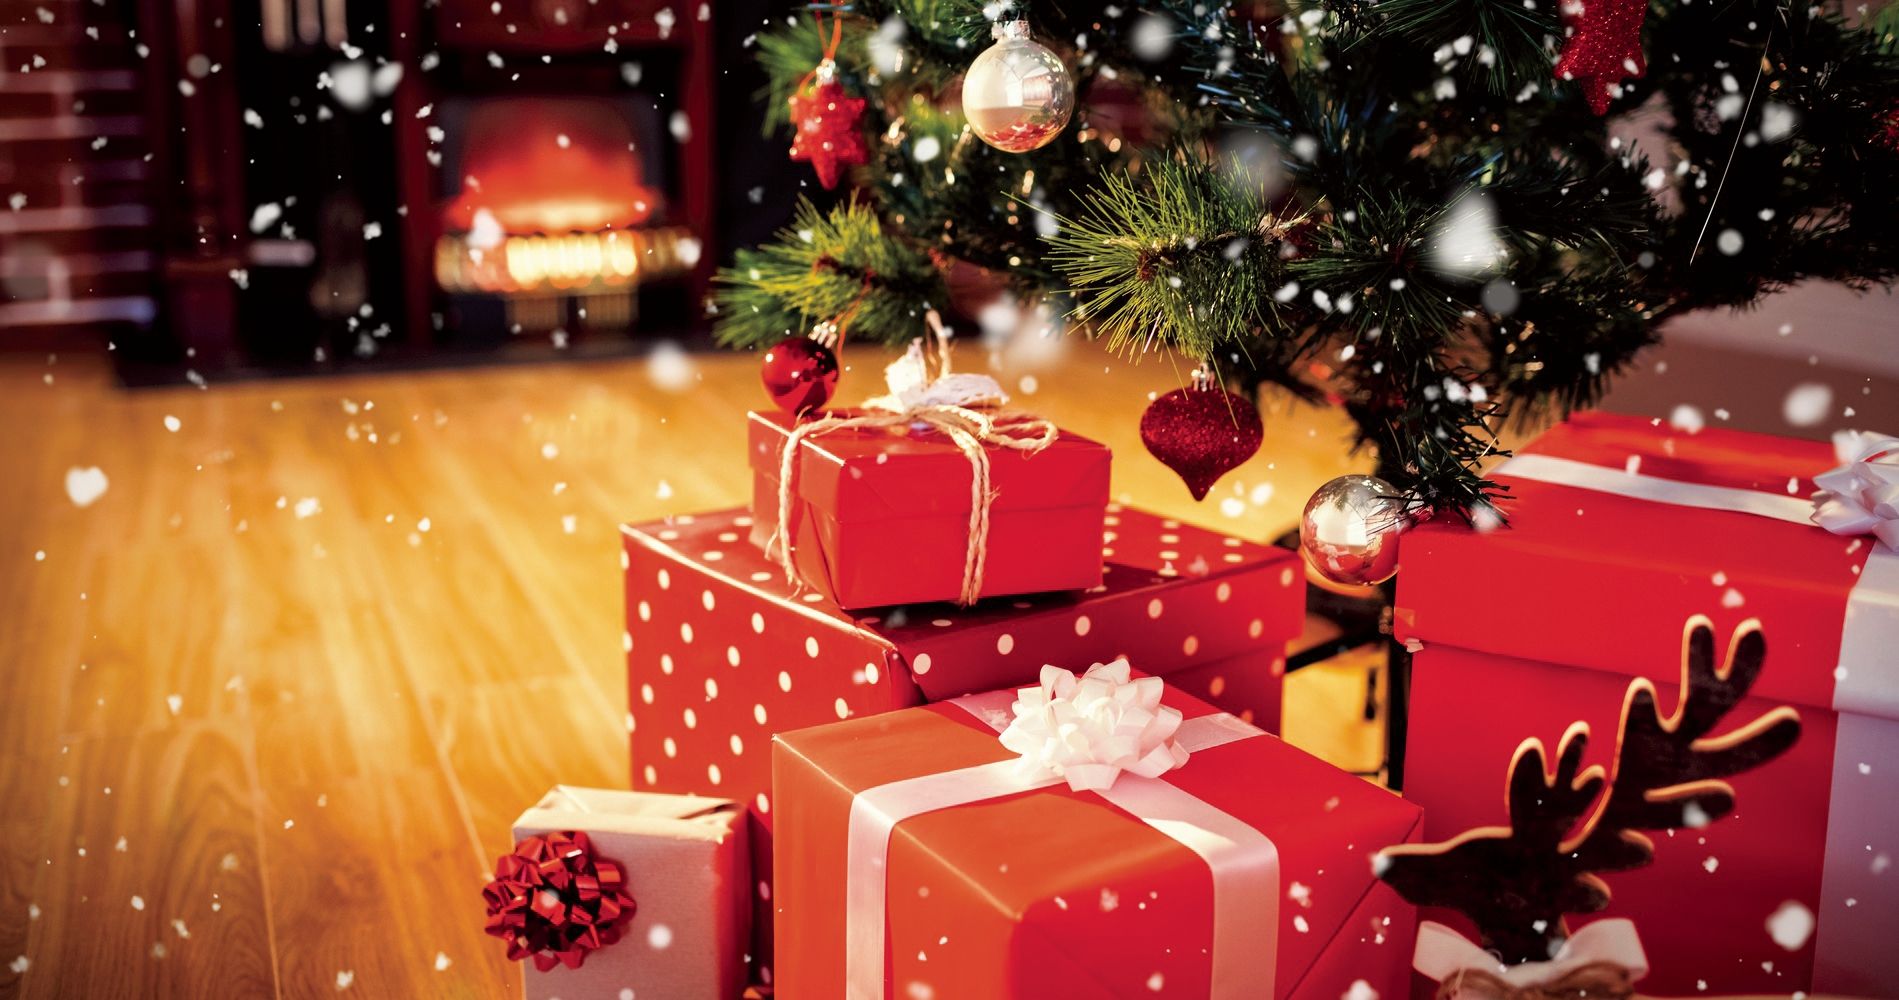 Emballage cadeau Noël, Spécialiste depuis 40 ans déjà Noël